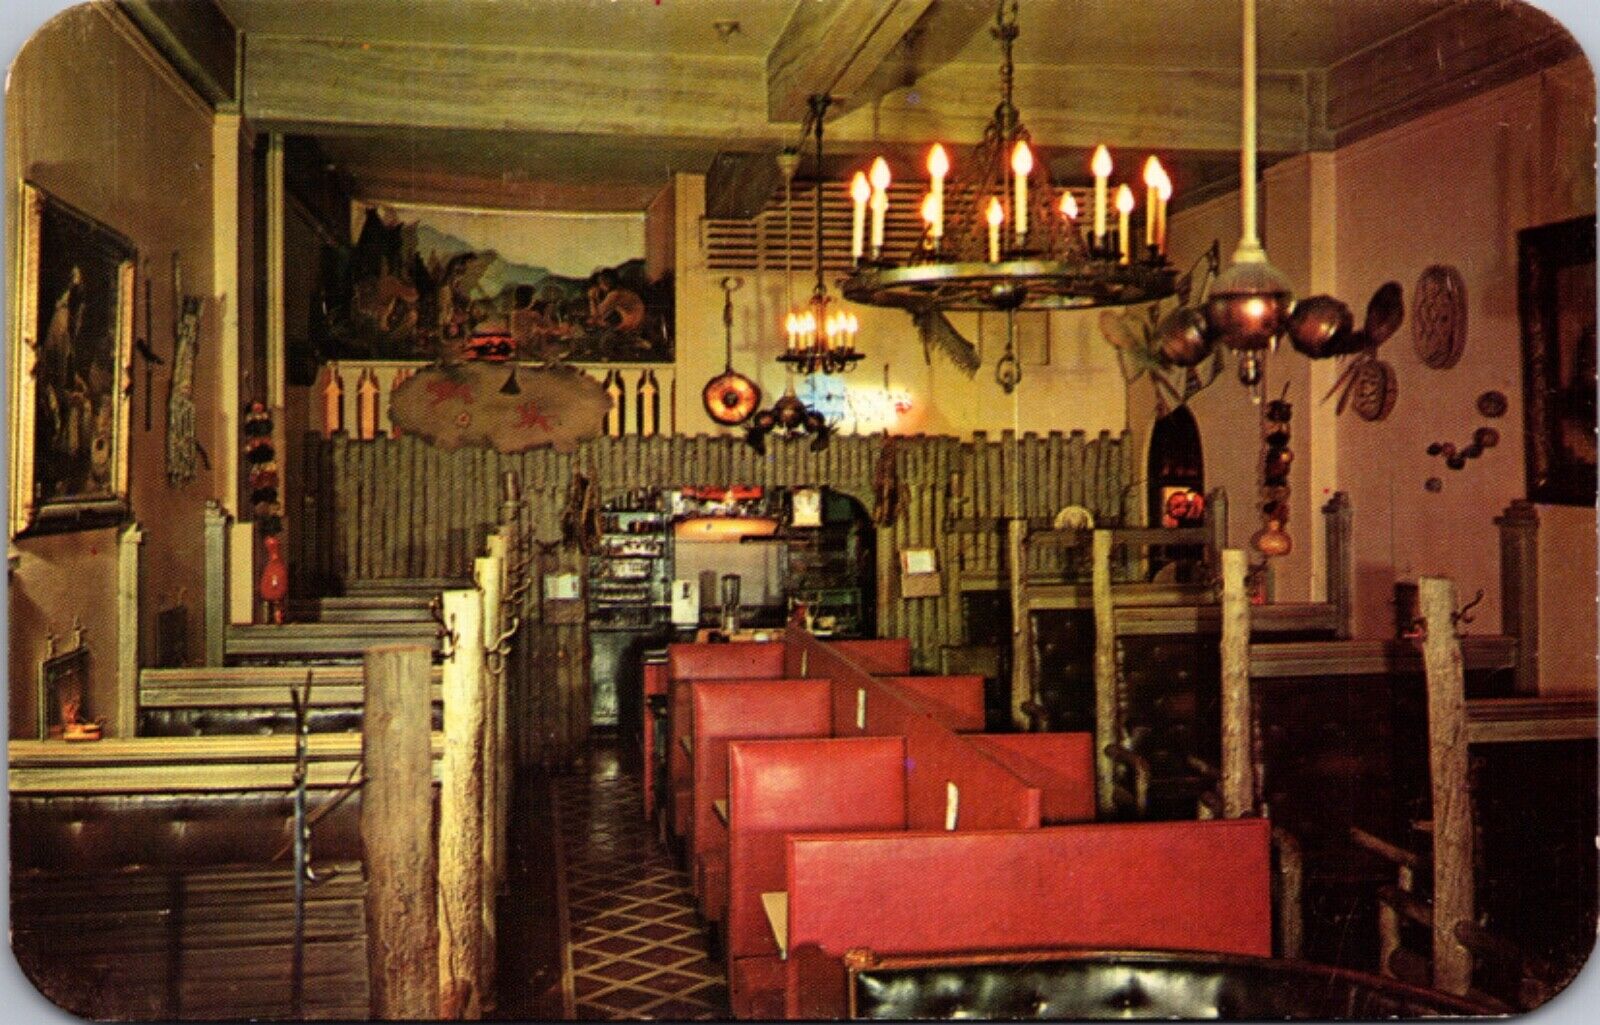 Postcard Interior of The Indian Grill Restaurant in Colorado Springs, Colorado